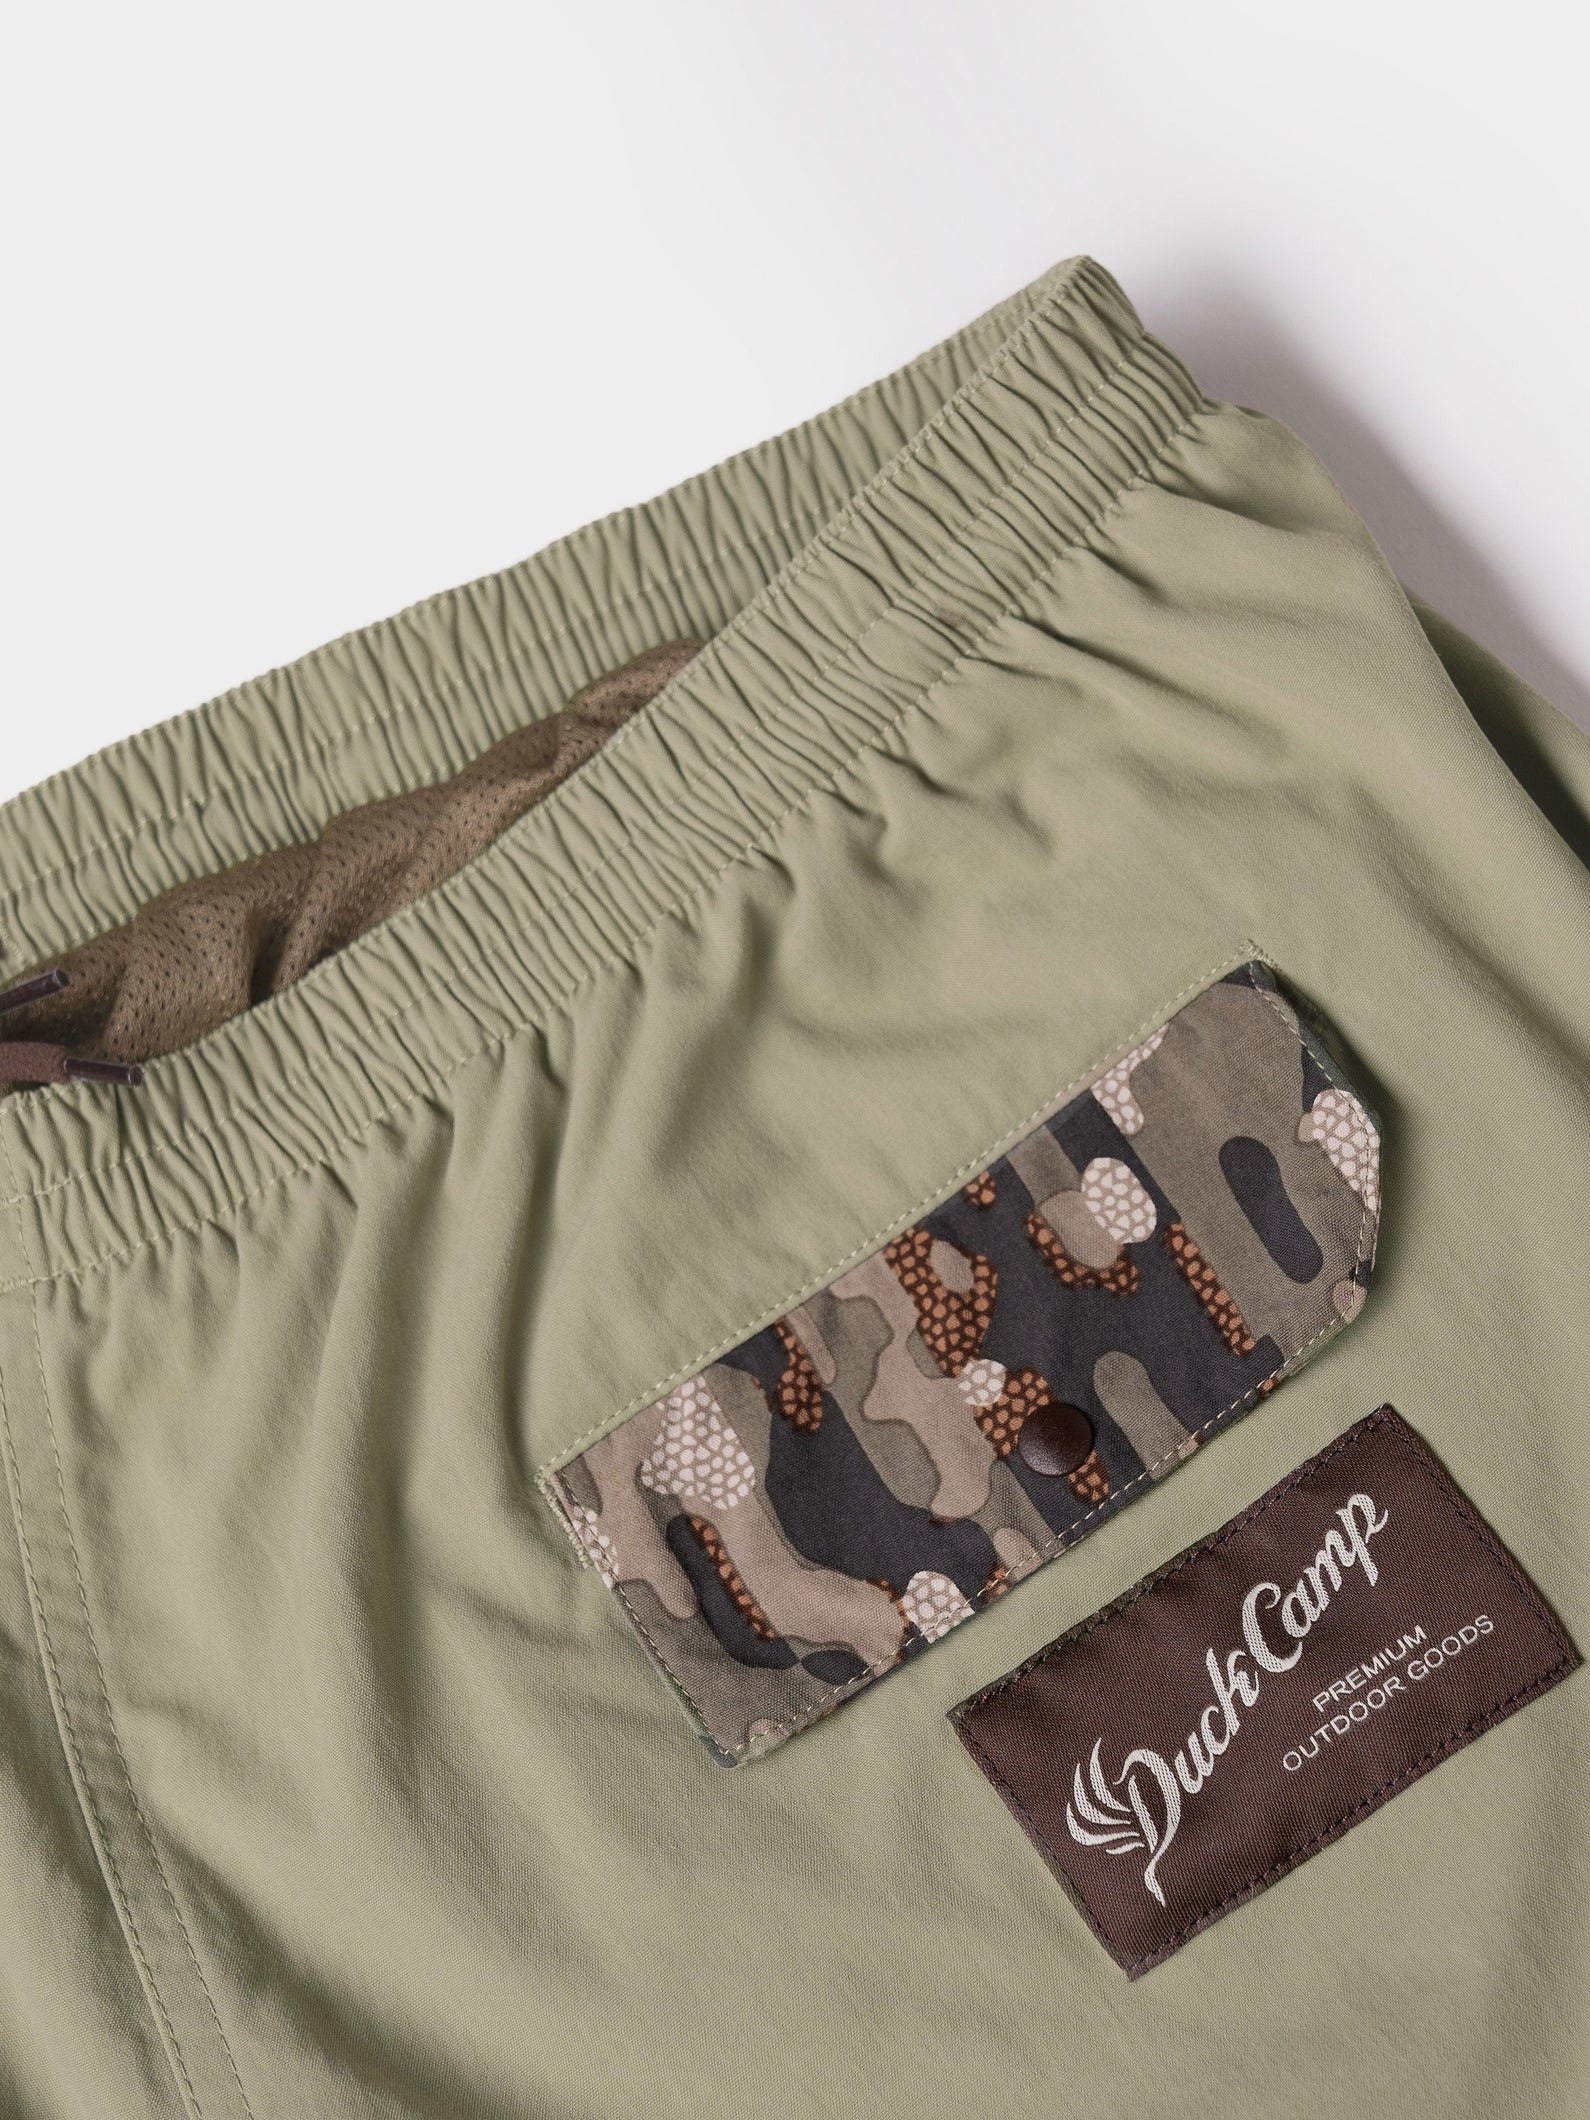 Scout Shorts 5" - Sagebrush